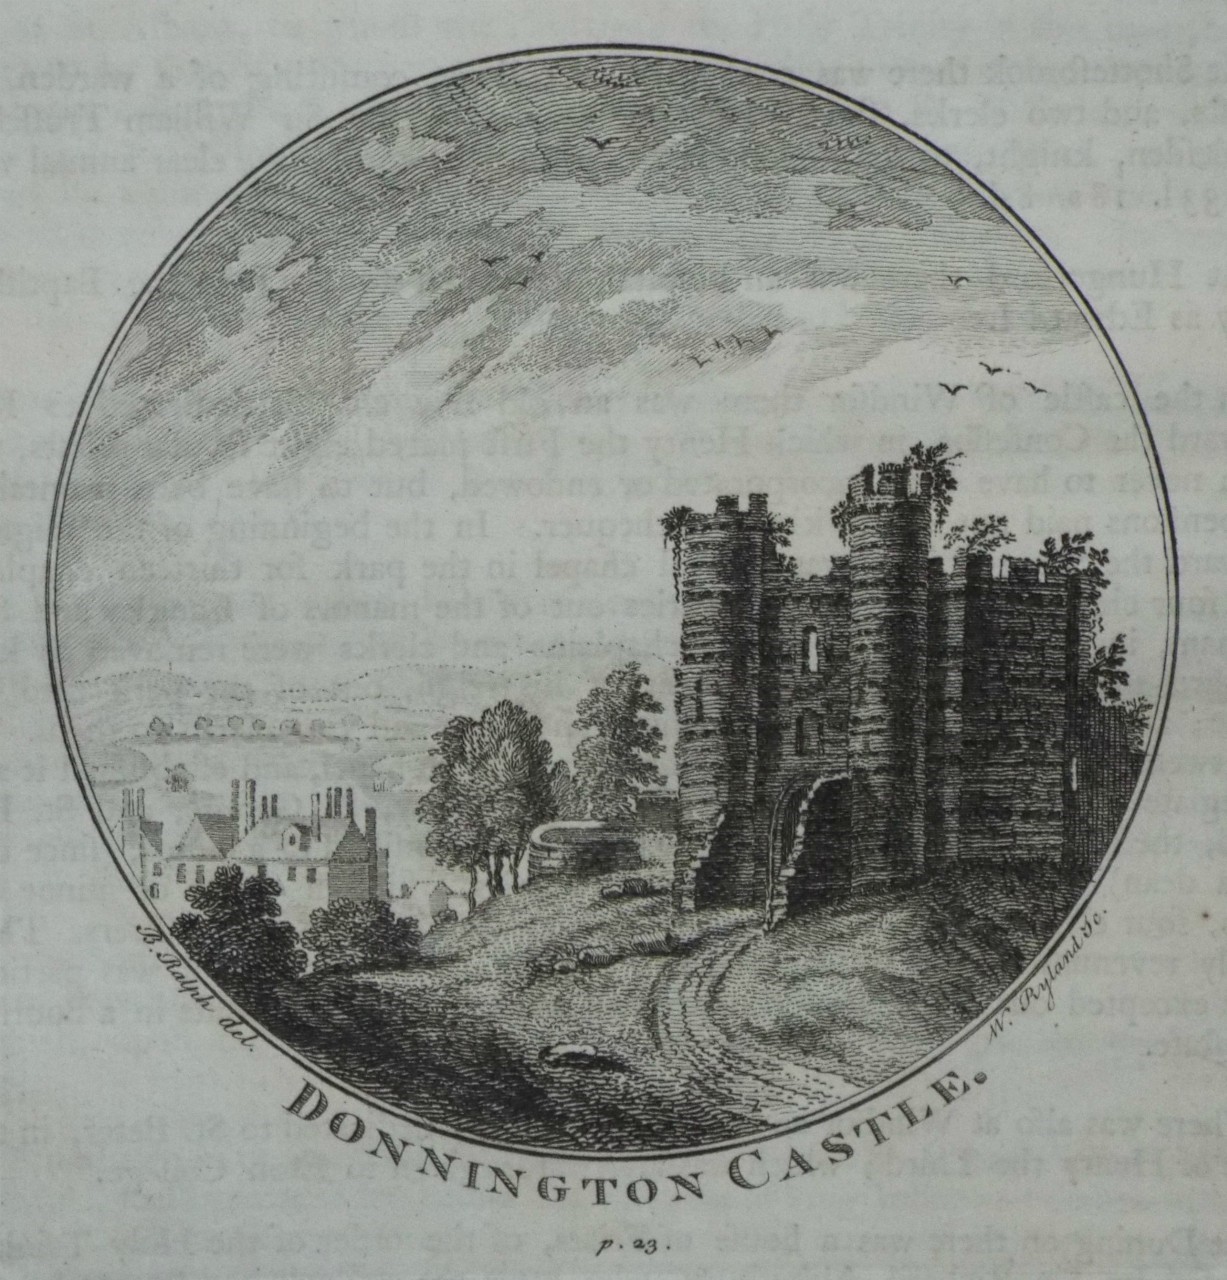 Print - Donnington Castle p.23. - Ryland